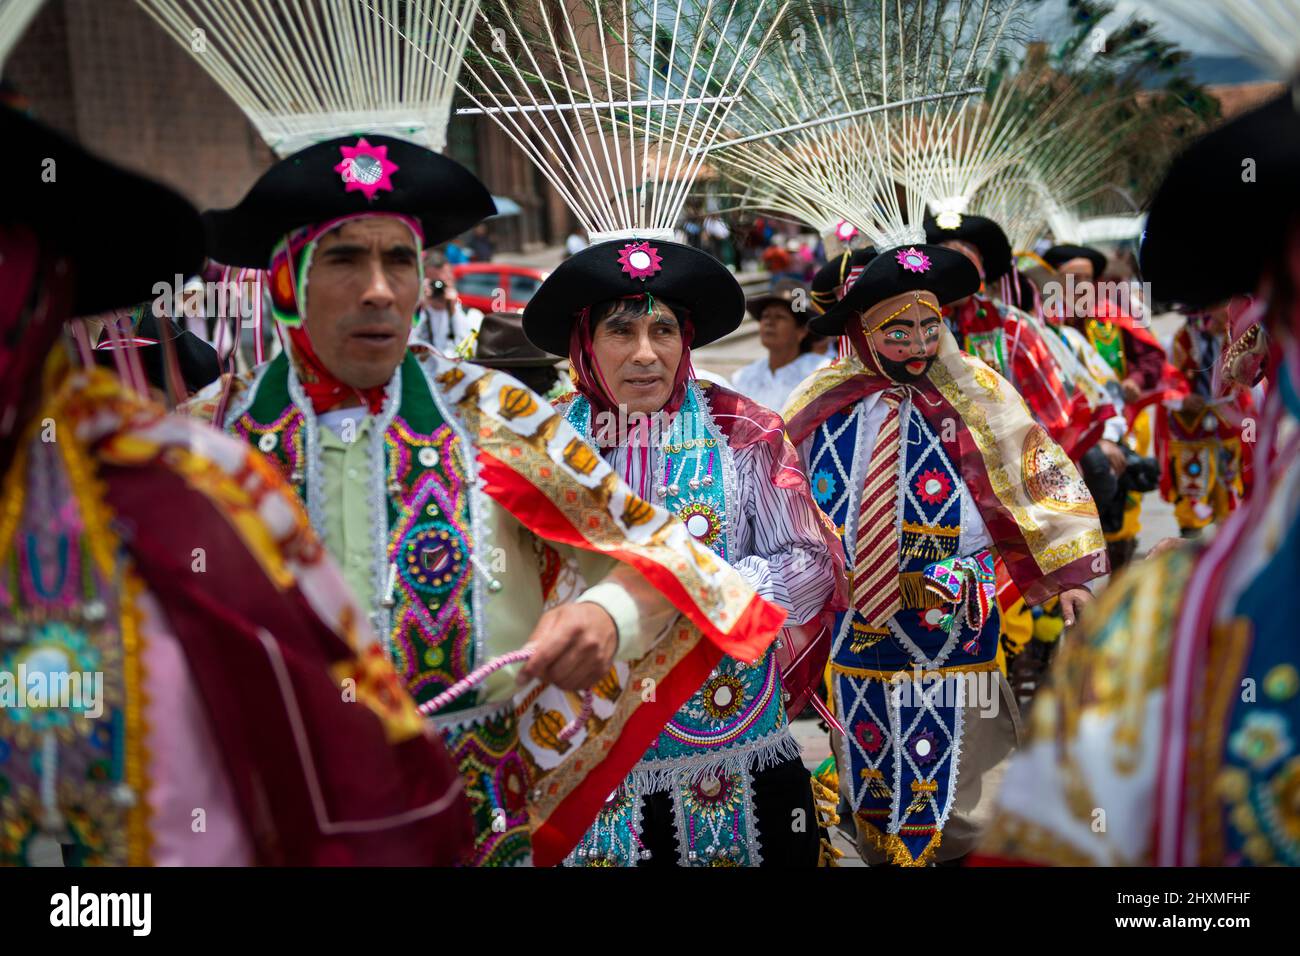 Cuzco, Pérou - 25 décembre 2013 : un groupe de personnes portant des vêtements et des masques traditionnels pendant les Huaylia le jour de Noël sur la Plaza de Armas Banque D'Images